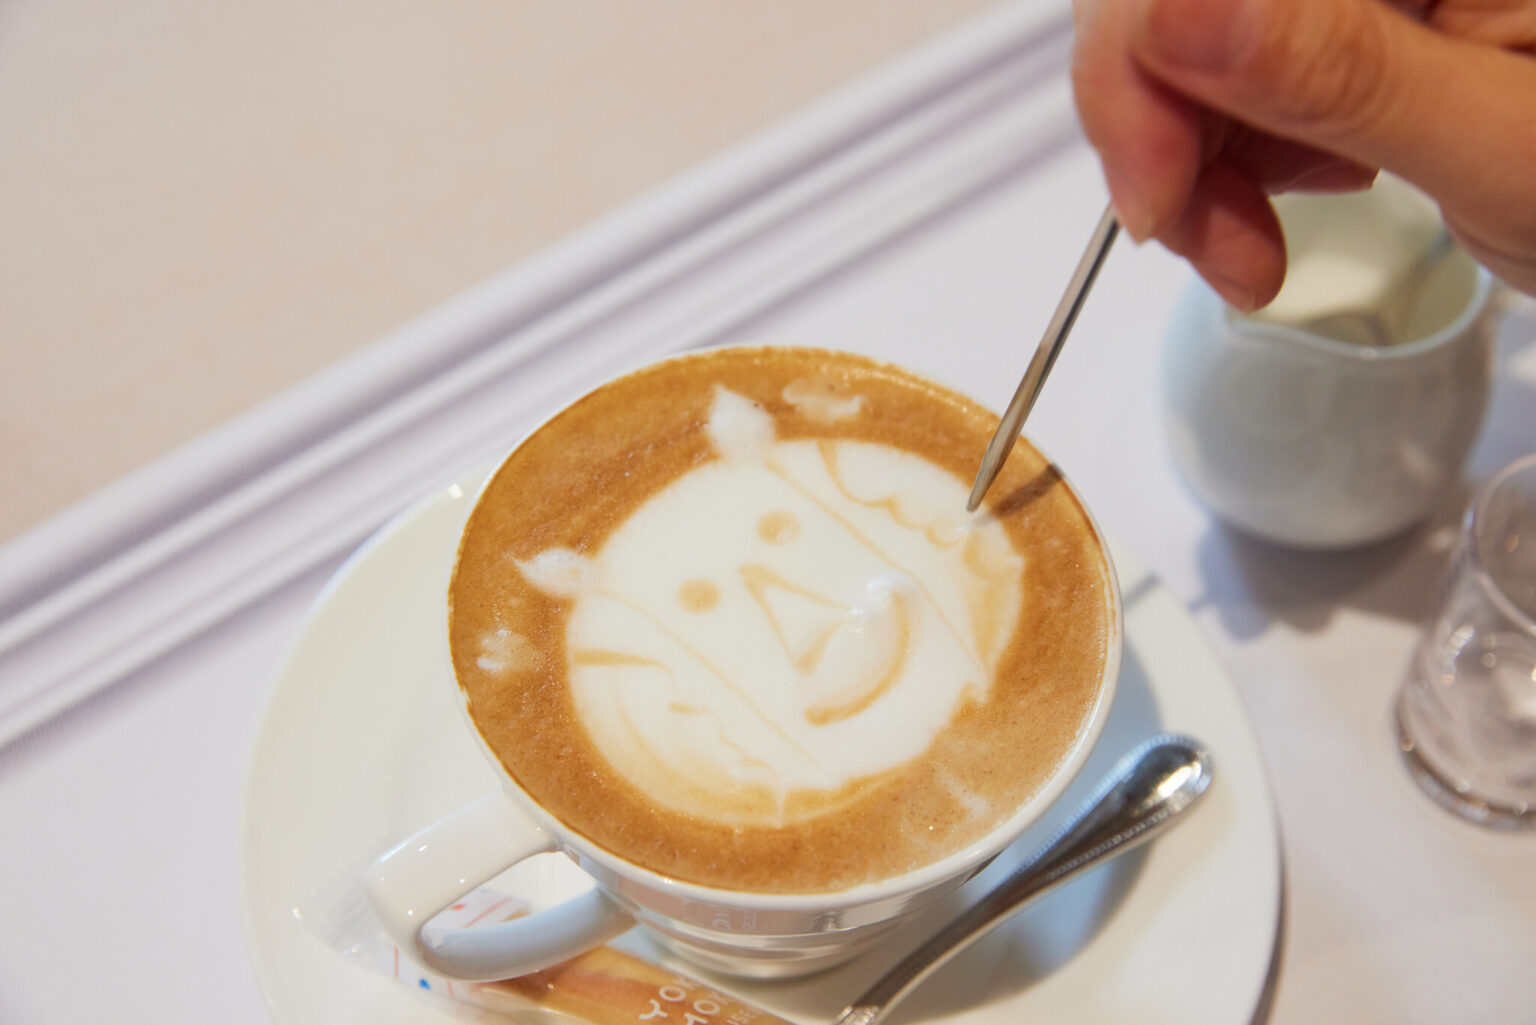 〈カフェ ヴァローリス〉のメニュー、「art for latte」はピックを使用して自由にデザインが描ける。